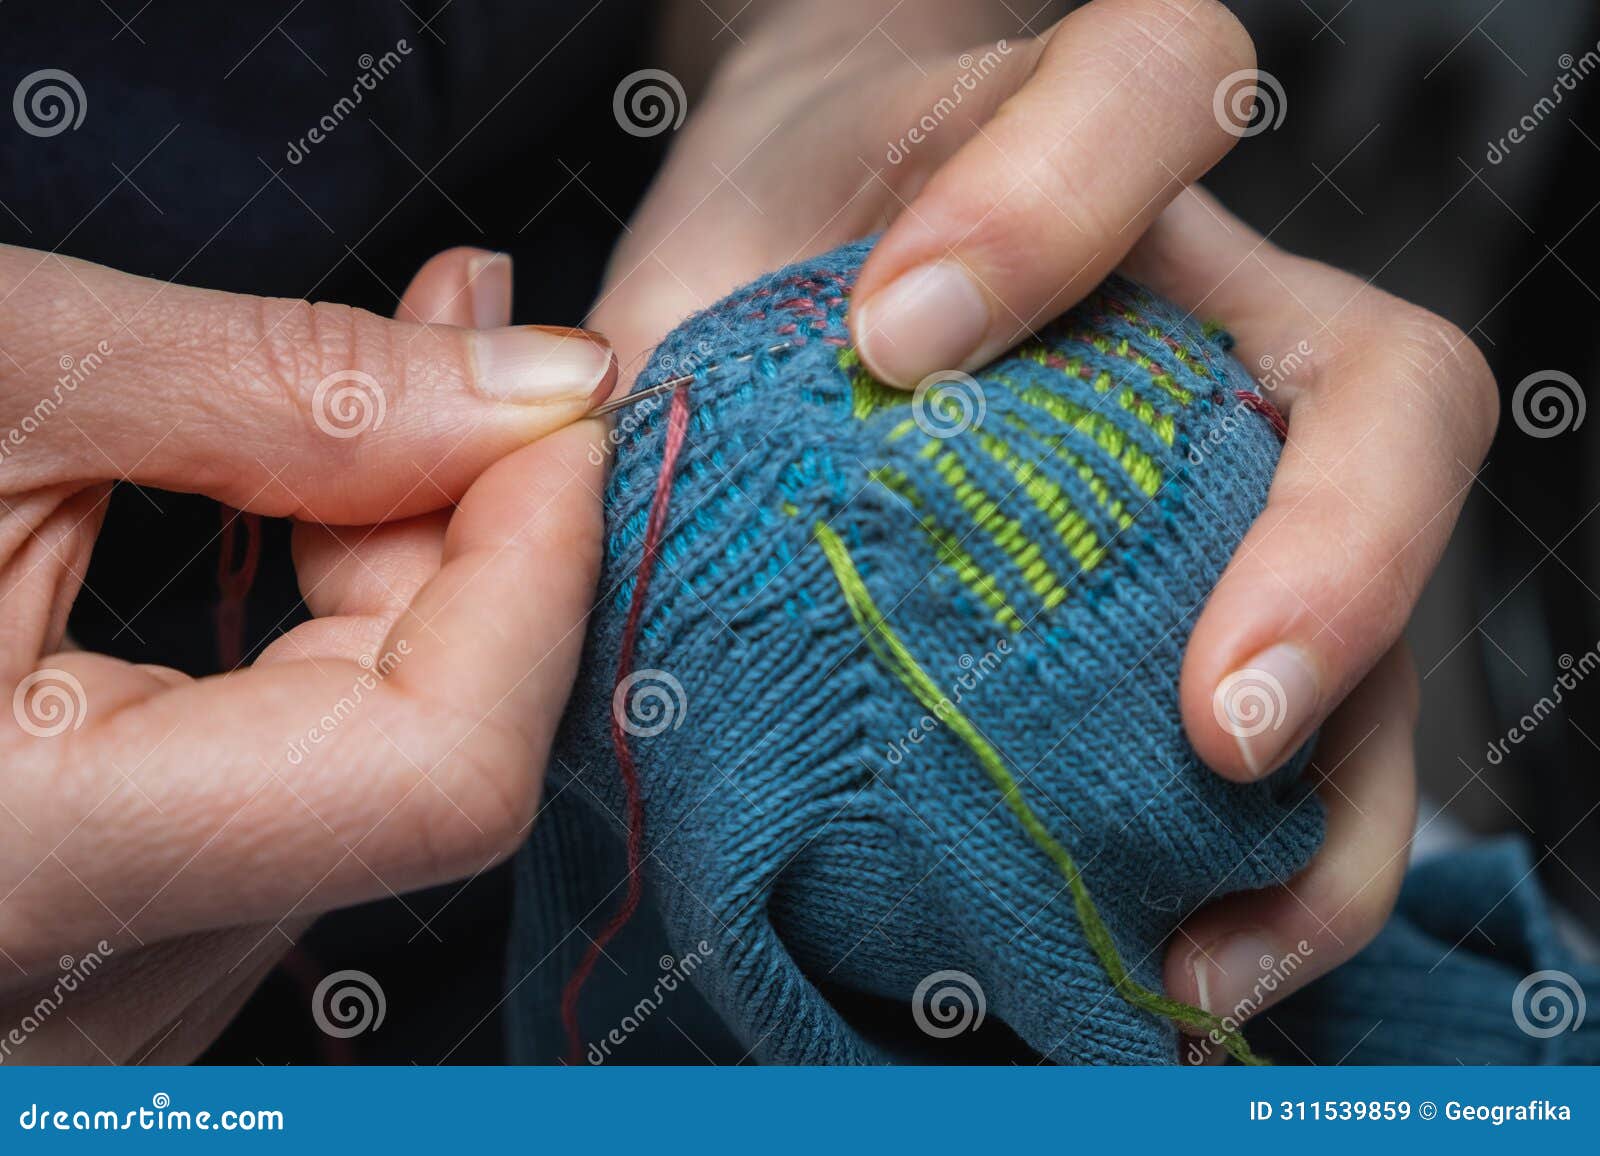 mending clothes. visible mending repairing sock